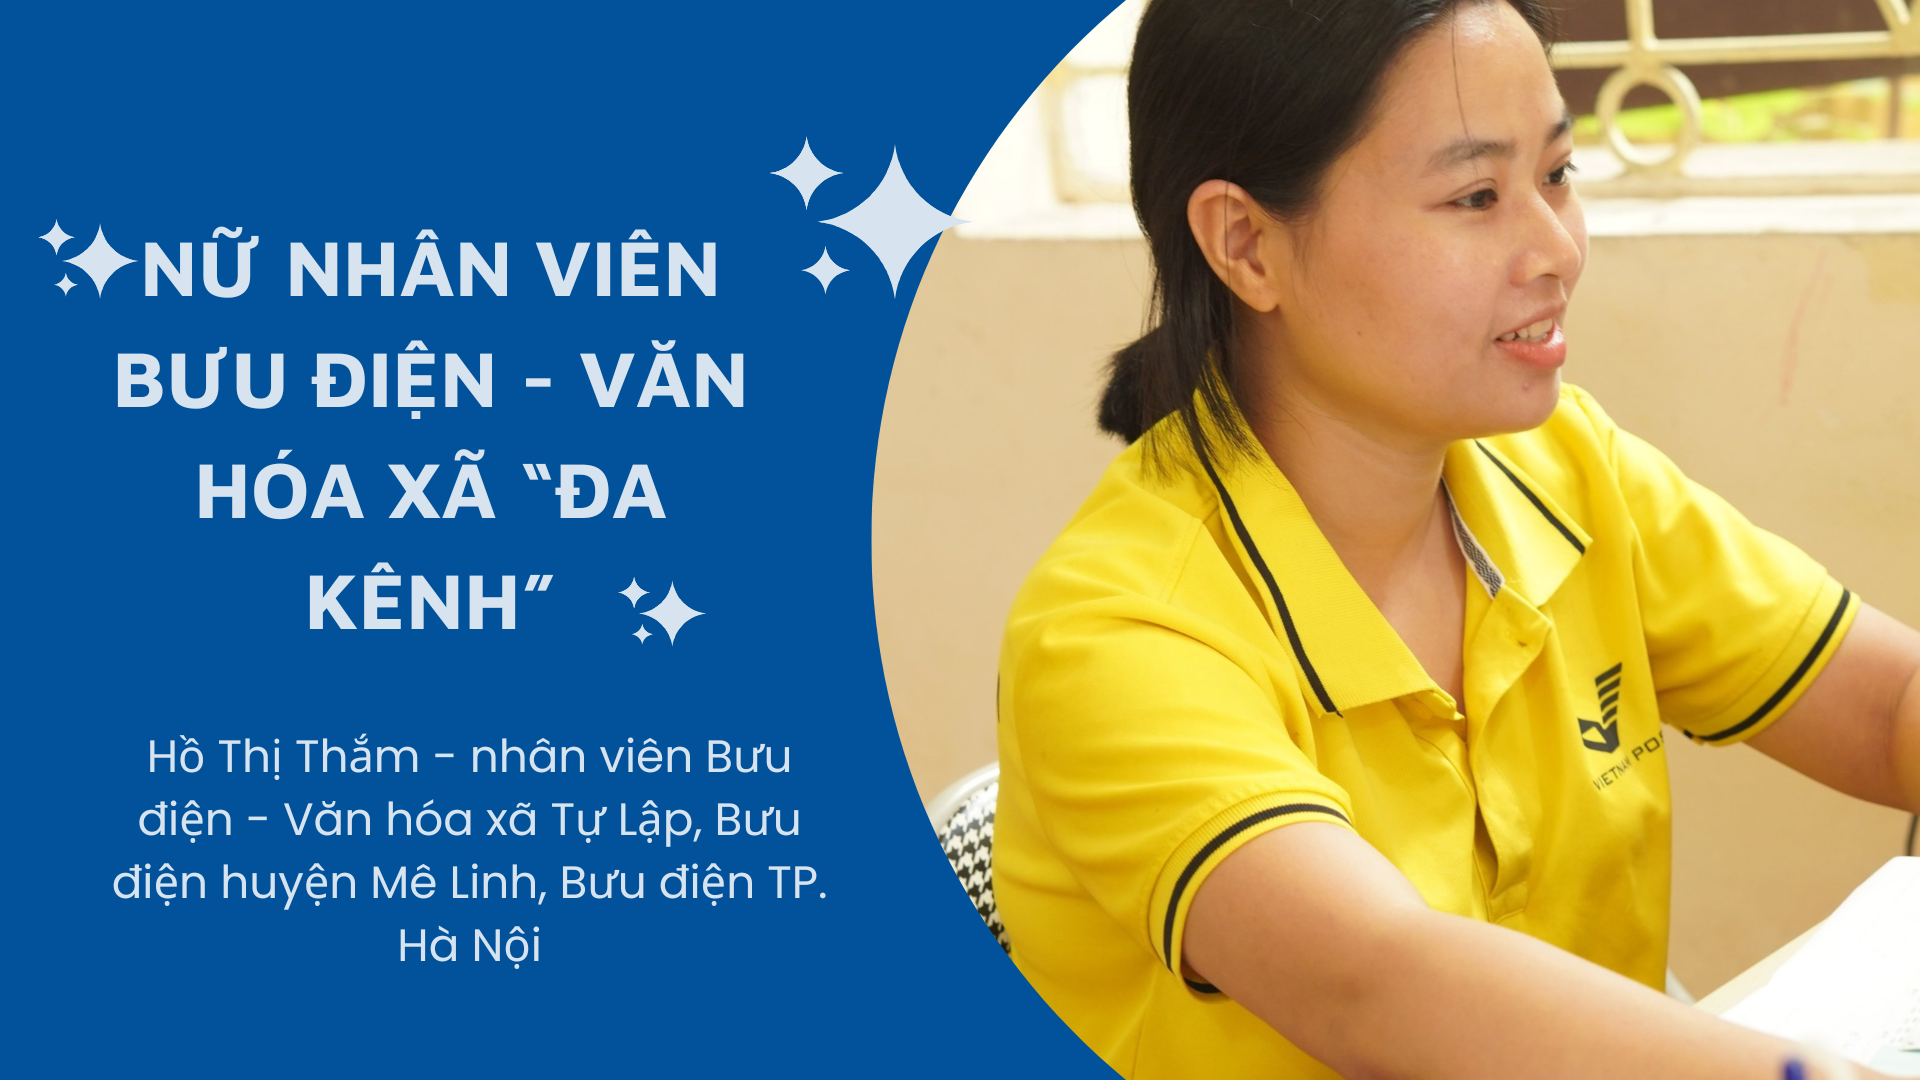 Cover Image for Nữ nhân viên Bưu điện – Văn hóa xã “đa kênh”